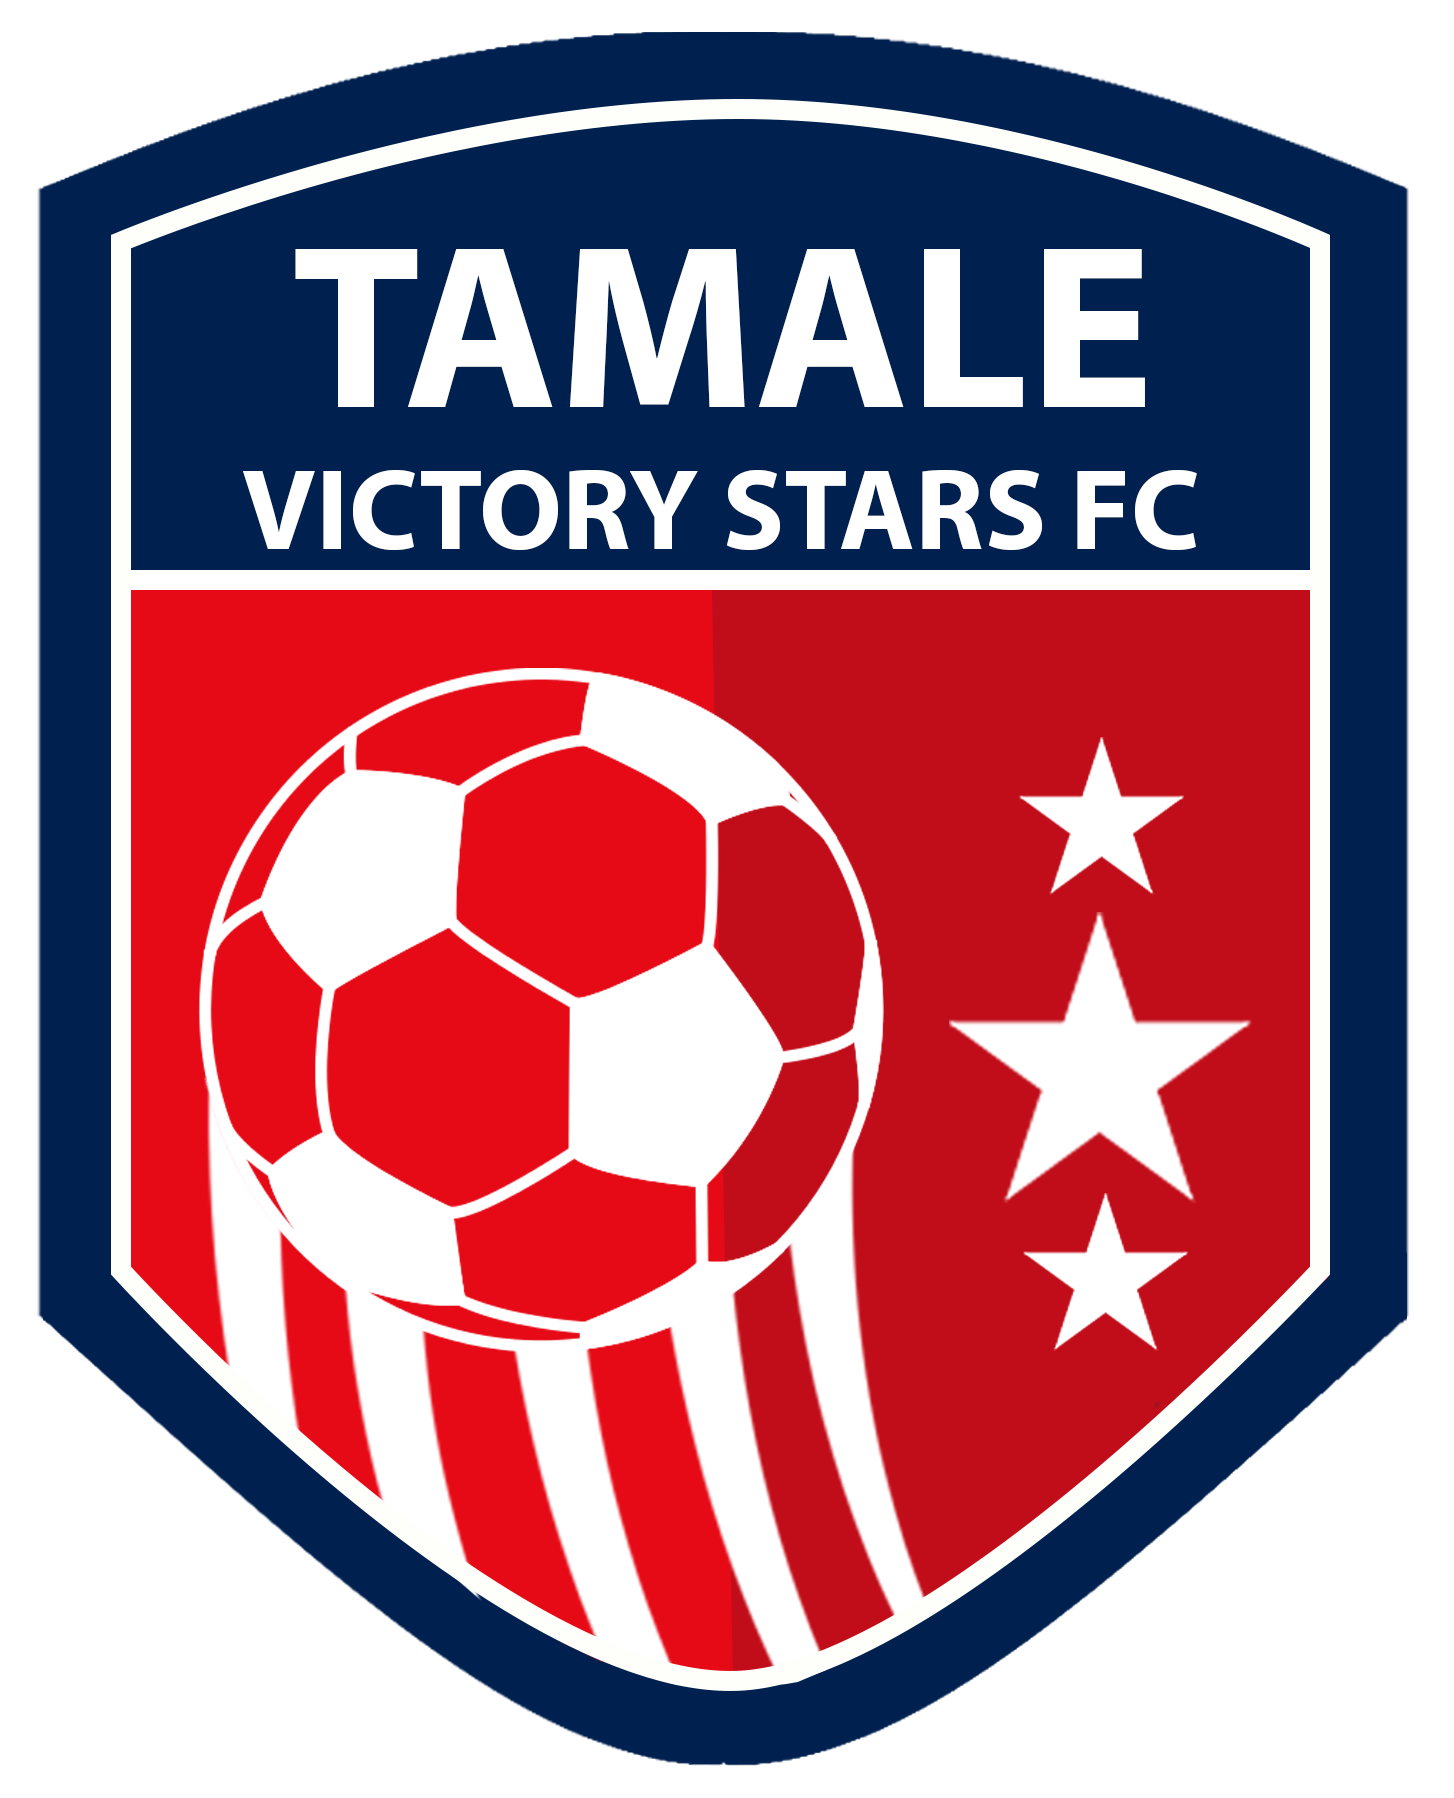 TAMALE VICTORY STARS FOOTBALL CLUB